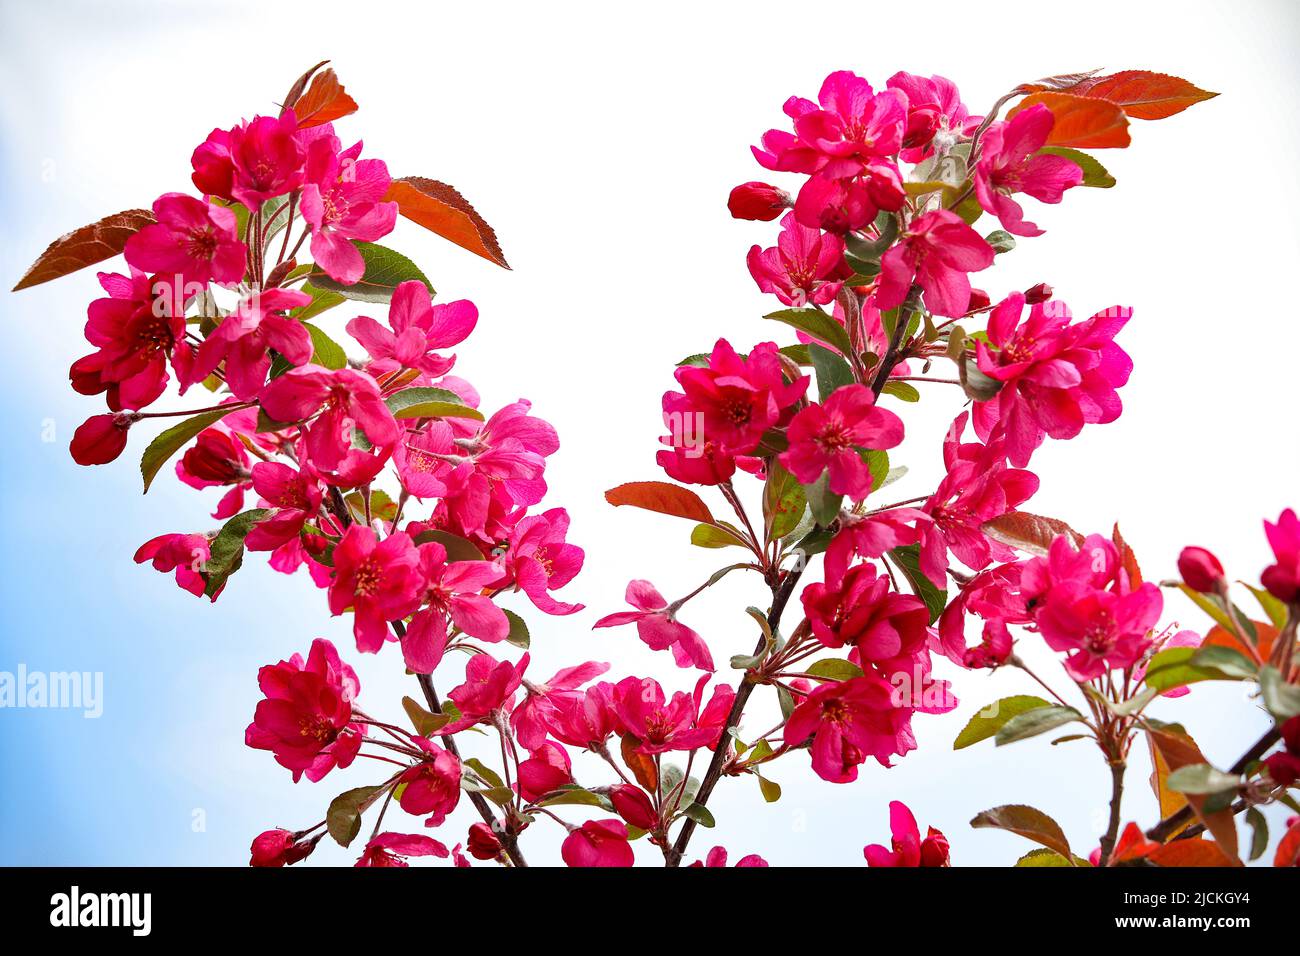 Khi nhìn vào bức ảnh hoa quince hồng nở rộ ảnh chụp chất lượng cao và hình ảnh, bạn sẽ tự mình cảm nhận được tình yêu thương đong đầy của thiên nhiên. Màu hồng tươi sáng và hương thơm dịu ngọt của hoa quince sẽ nếm trải cảm giác yêu đời và thăng hoa trong tâm hồn.